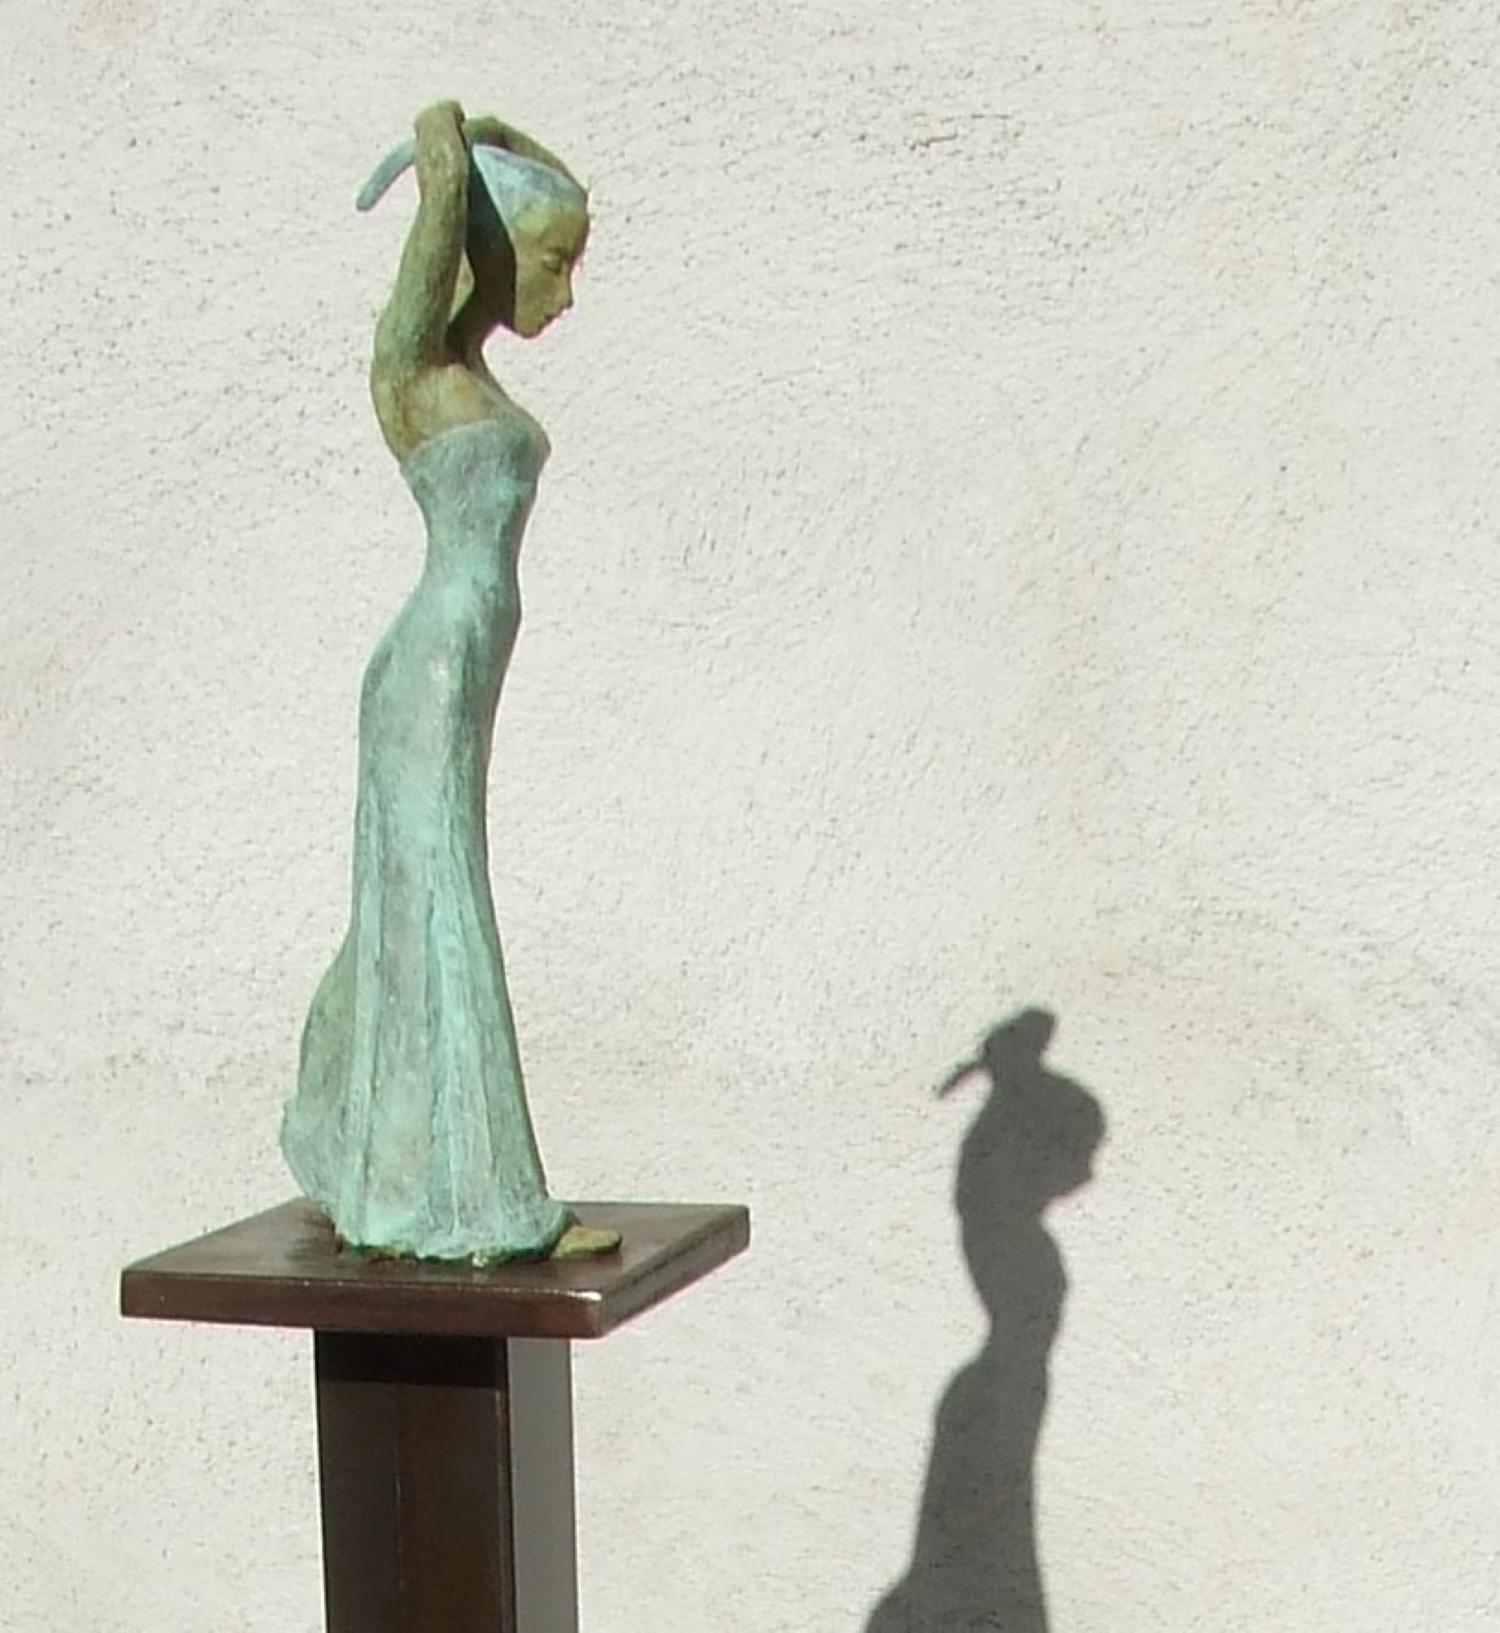 Sensualité III est une sculpture en bronze à patine verte, elle est reliée à une base en acier. Le tirage est de 8 exemplaires. La sculpture sera expédiée dans une caisse en bois afin de la protéger au maximum pendant le transport.

La dernière